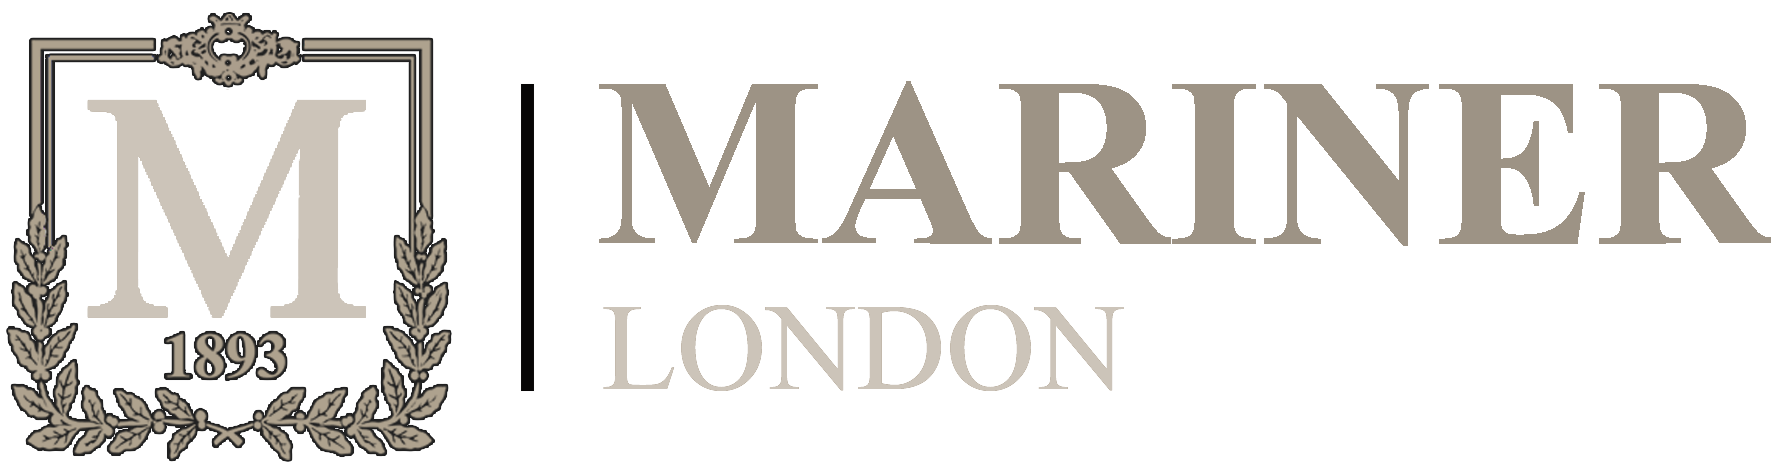 Mariner logo